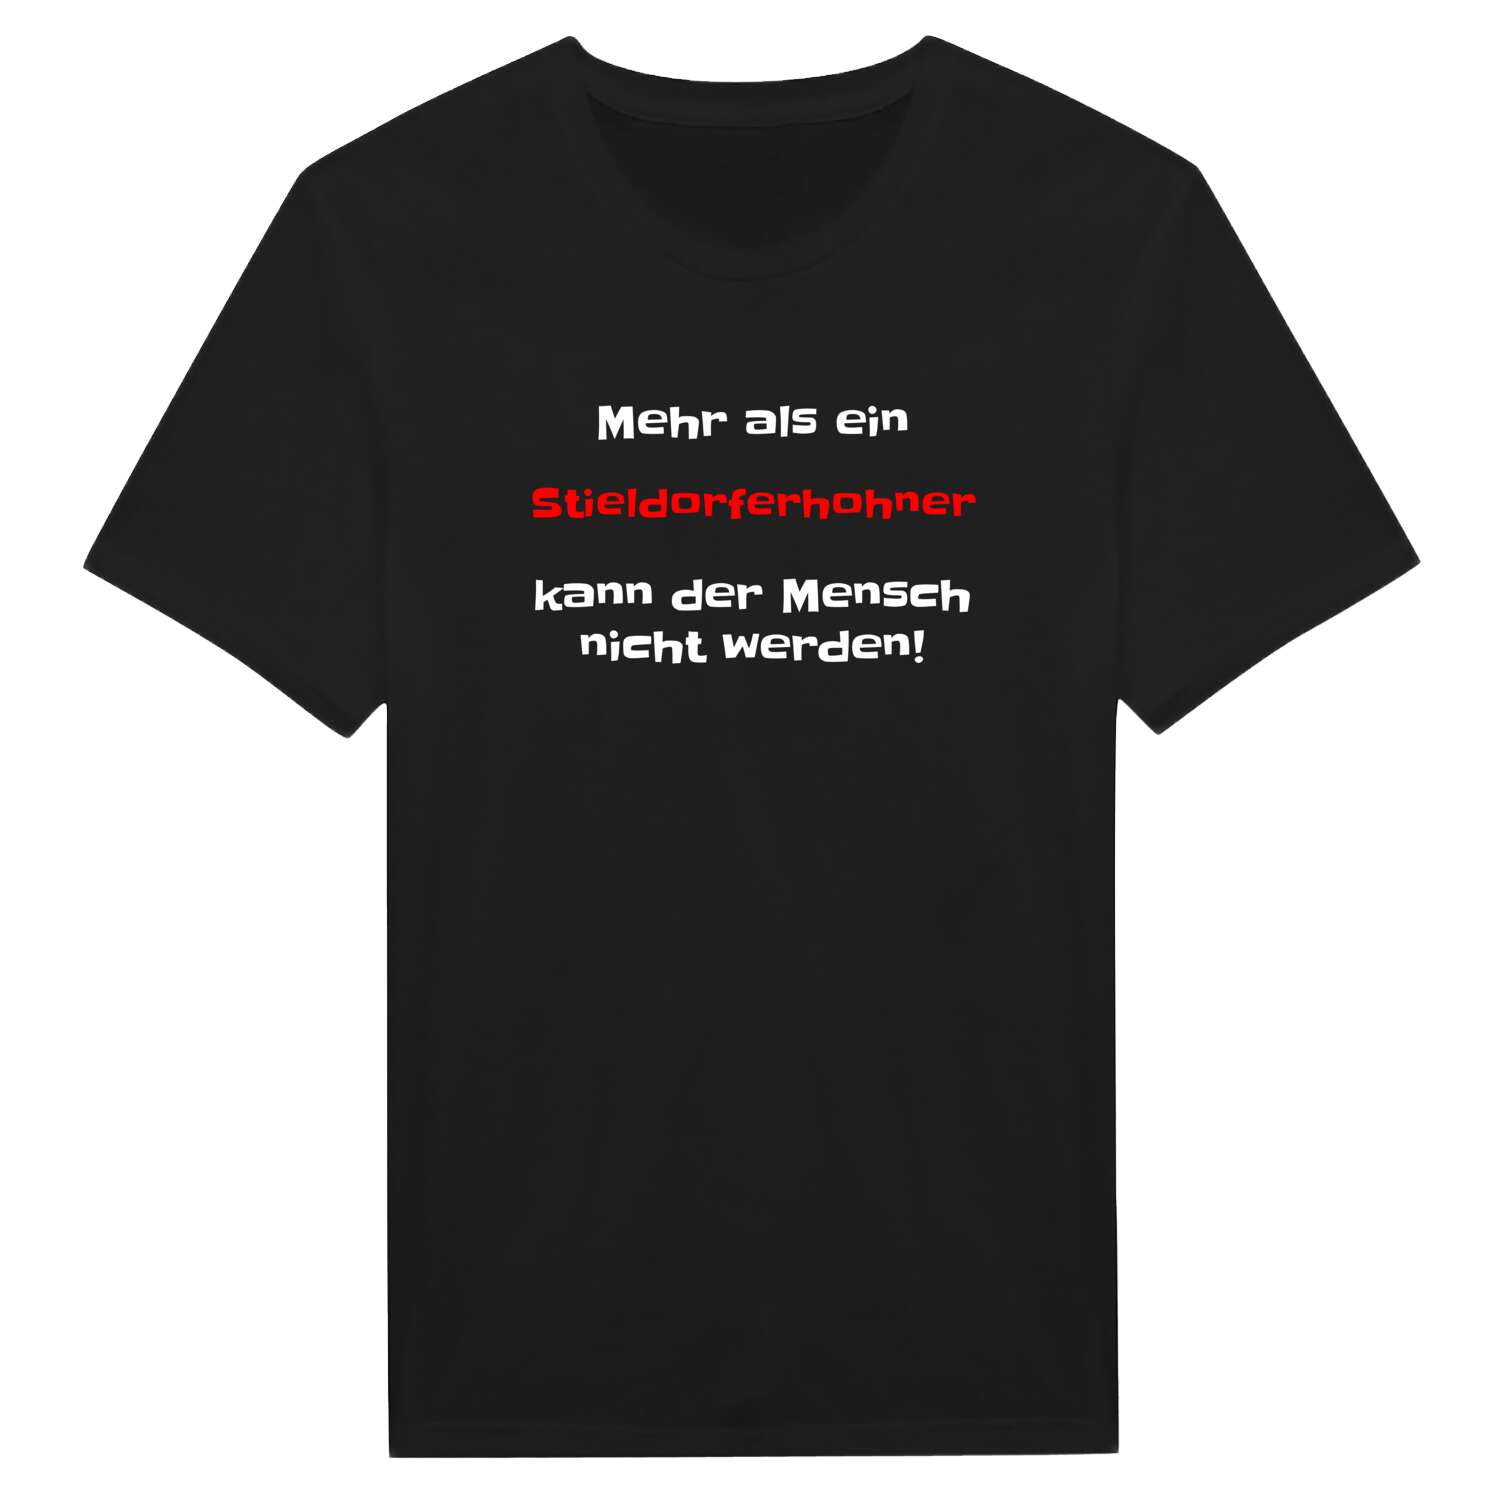 Stieldorferhohn T-Shirt »Mehr als ein«